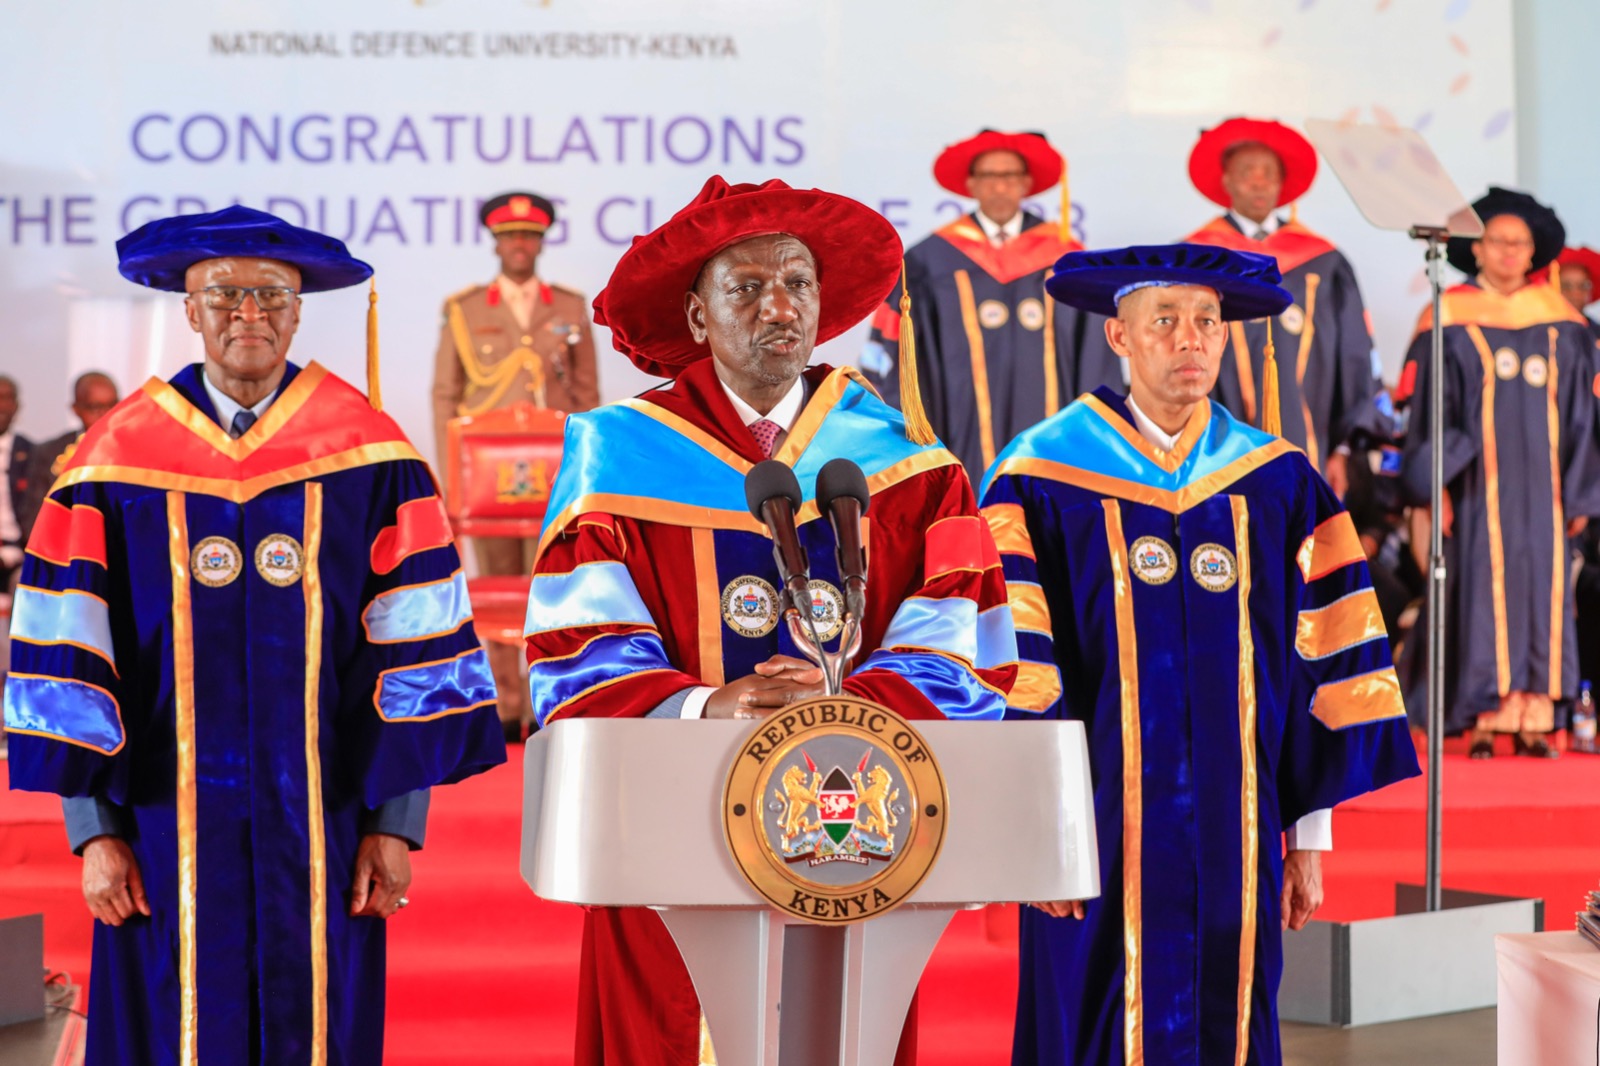 President Ruto Presides Over Inaugural Graduation at National Defence University-Kenya